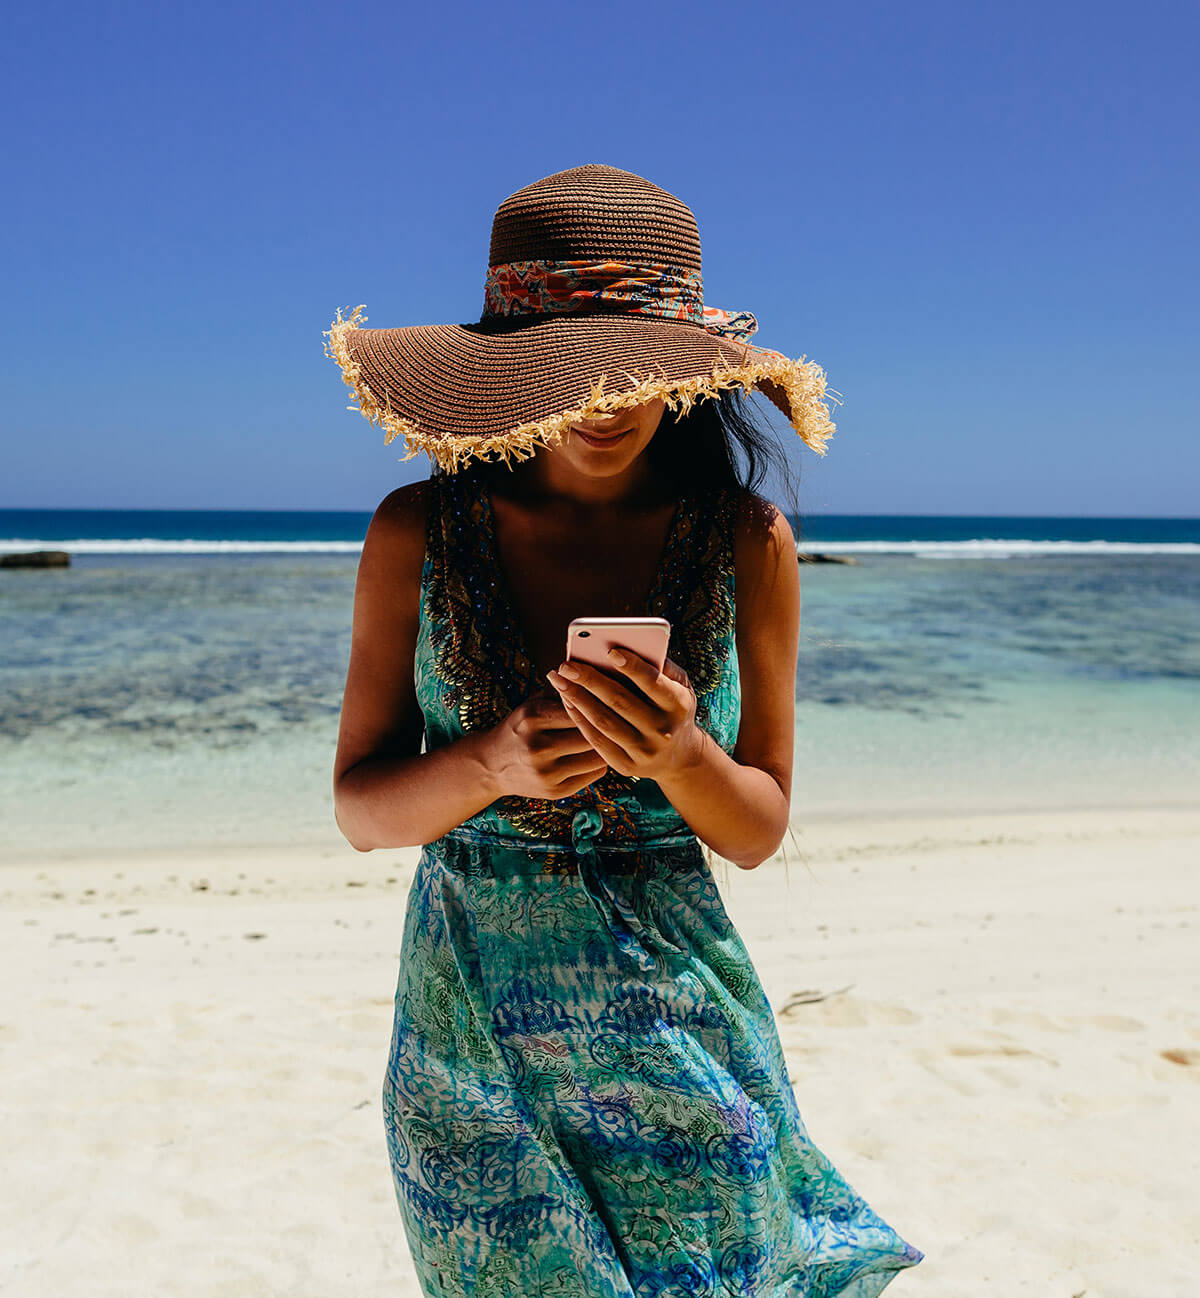 Mobiel internet op Curacao tips